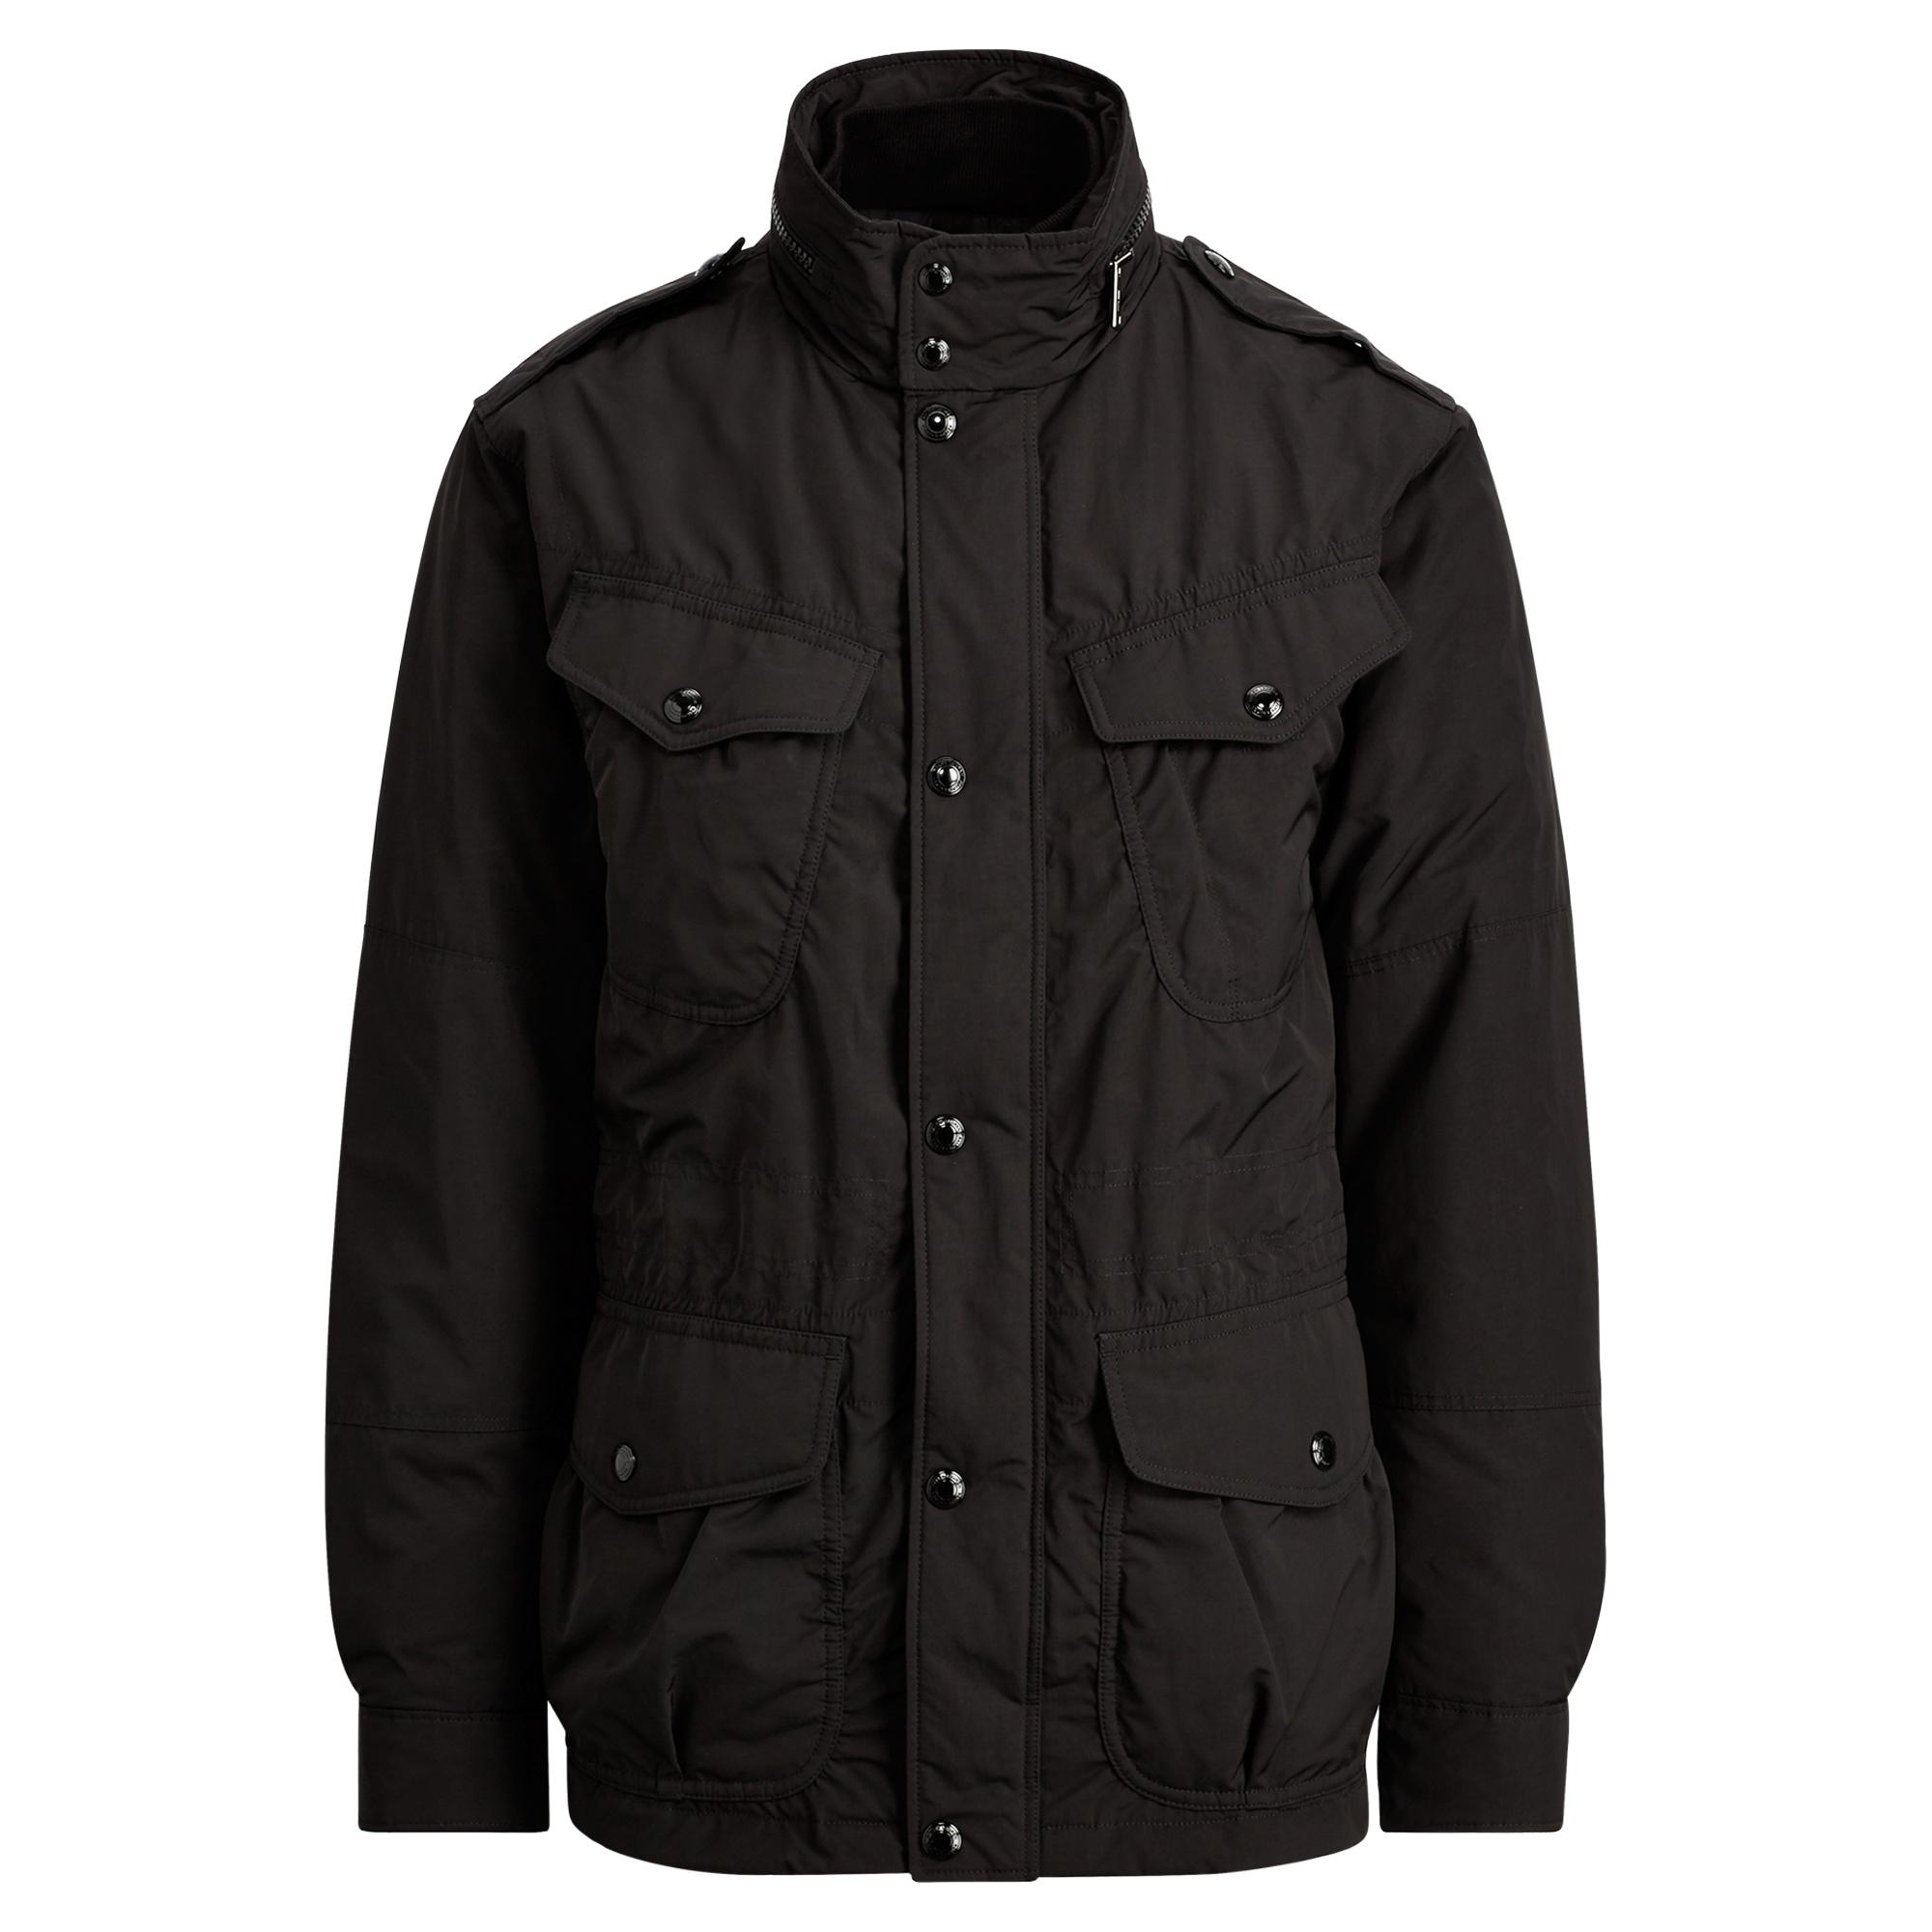 Polo Ralph Lauren Synthetic Down Field Jacket in Black for Men - Lyst